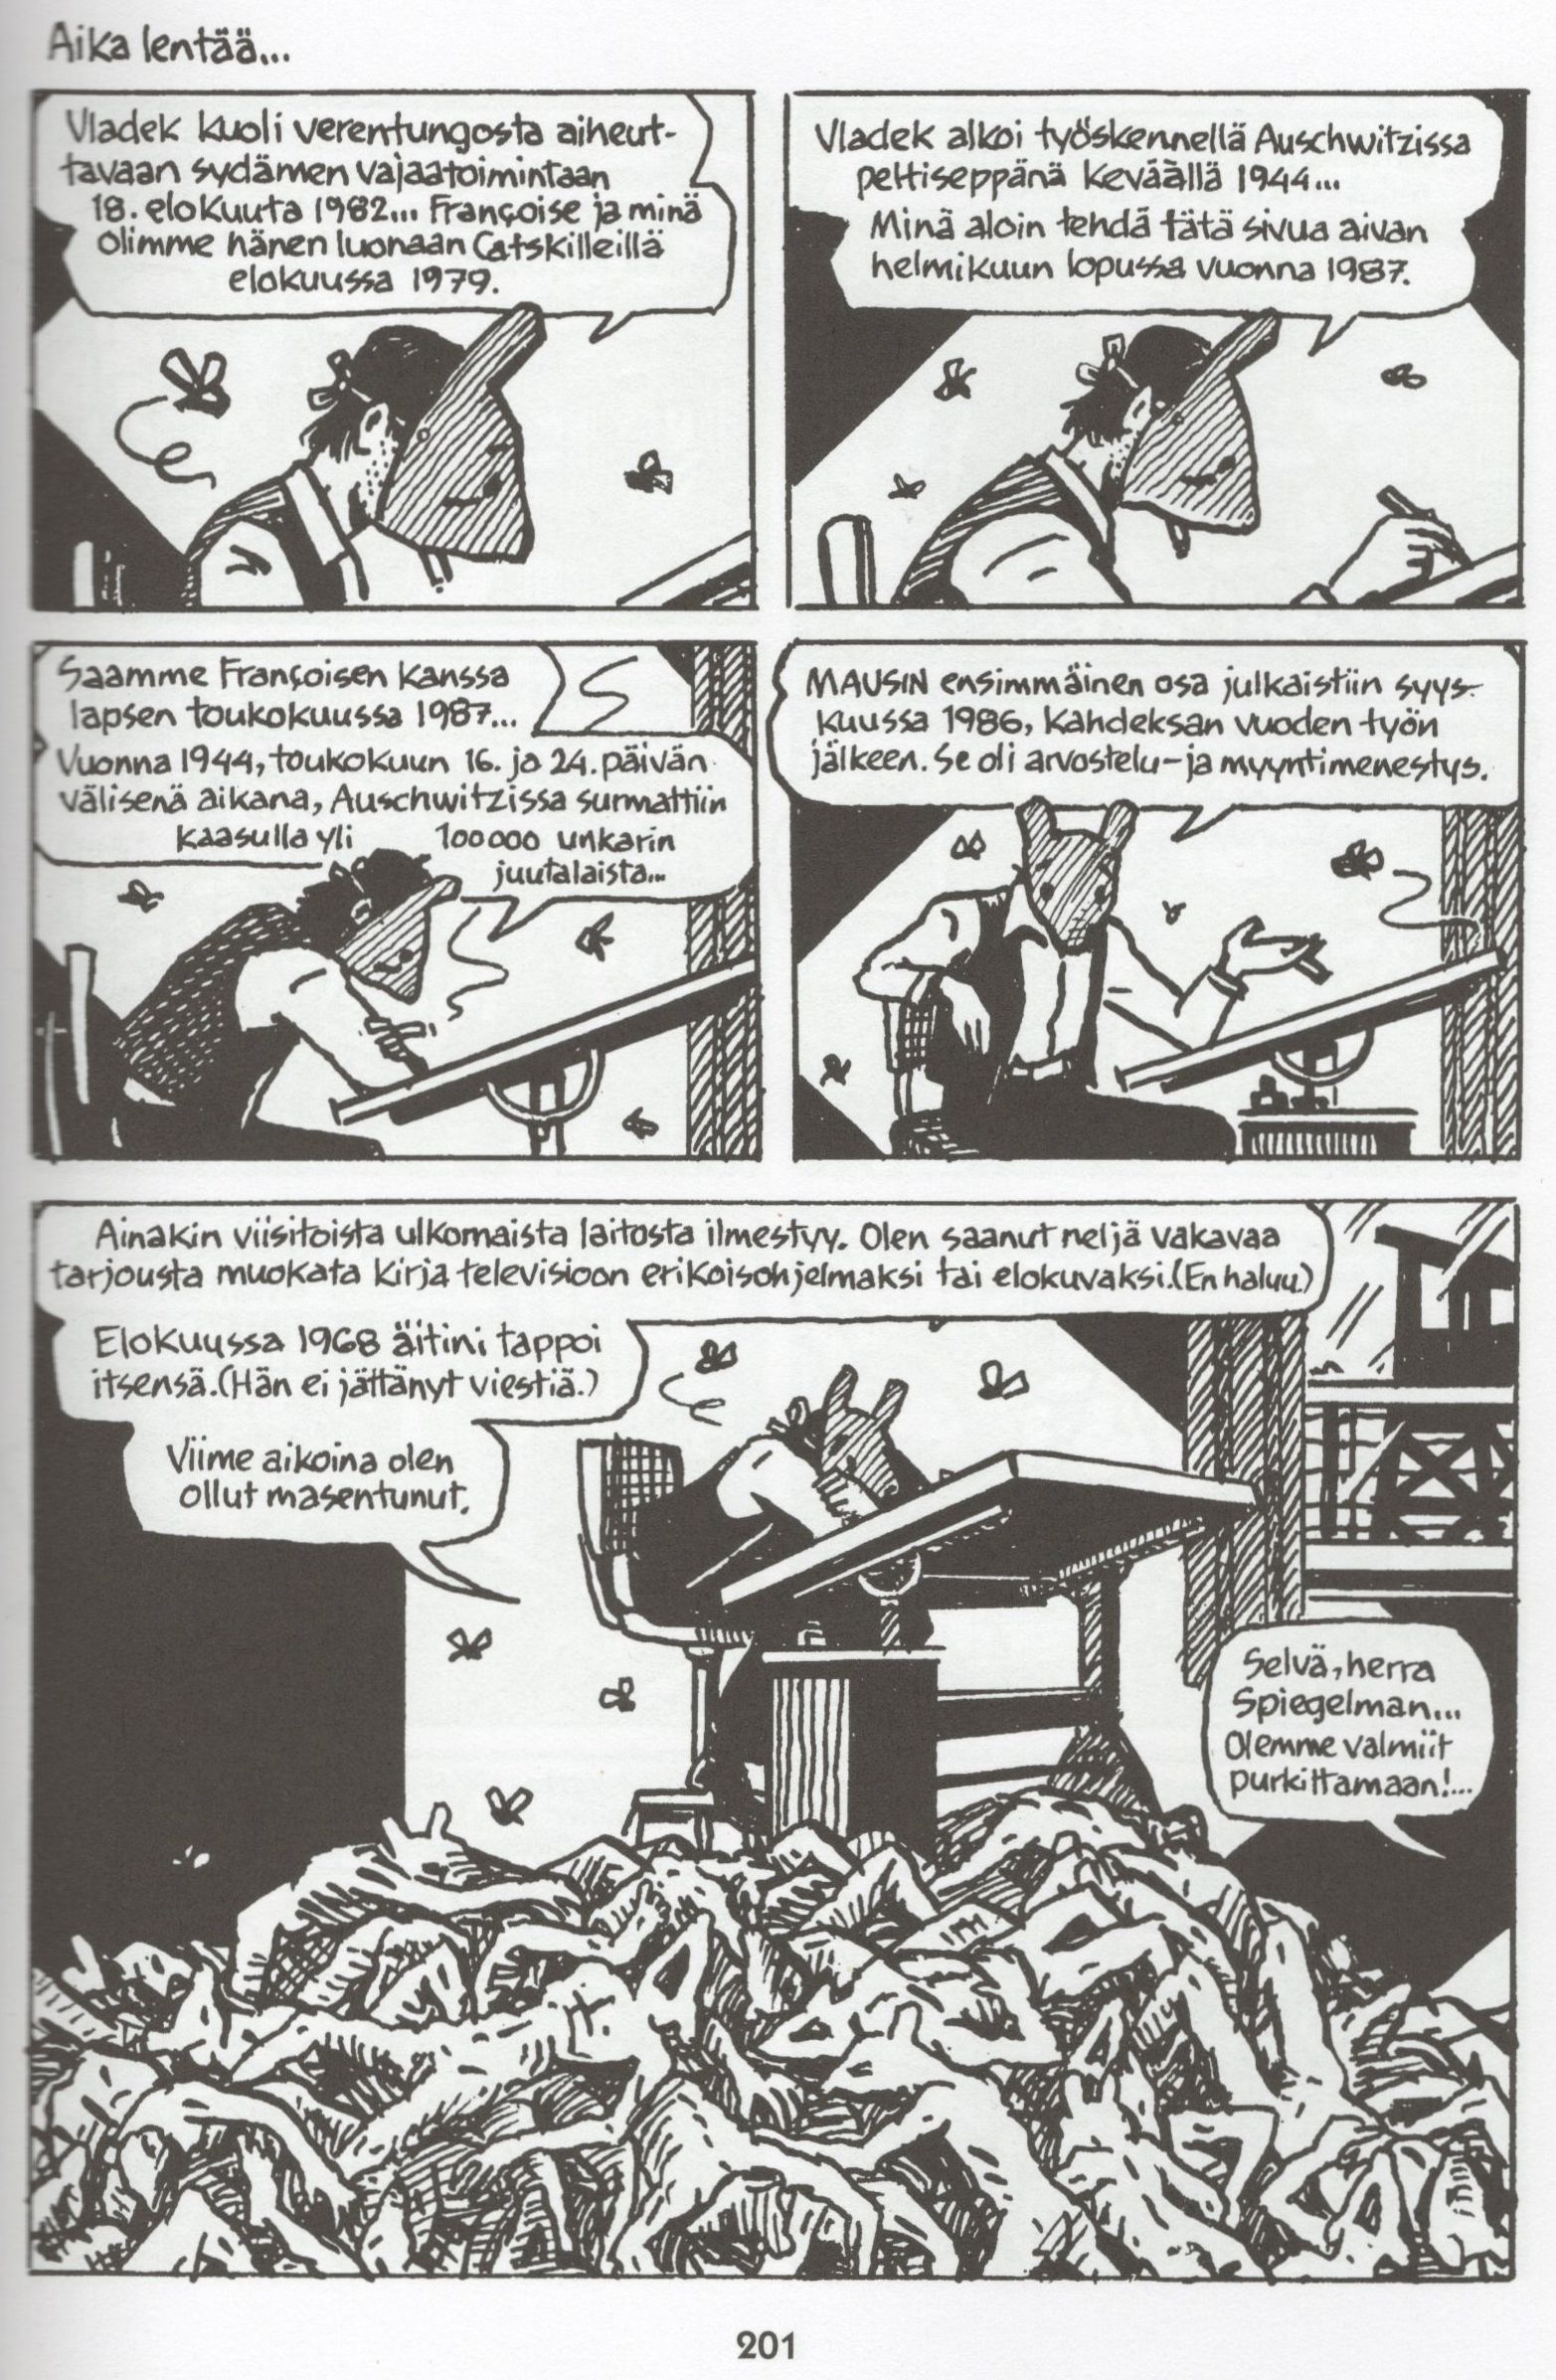 Sivu 201 Art Spiegelmanin sarjakuvateoksesta Maus.